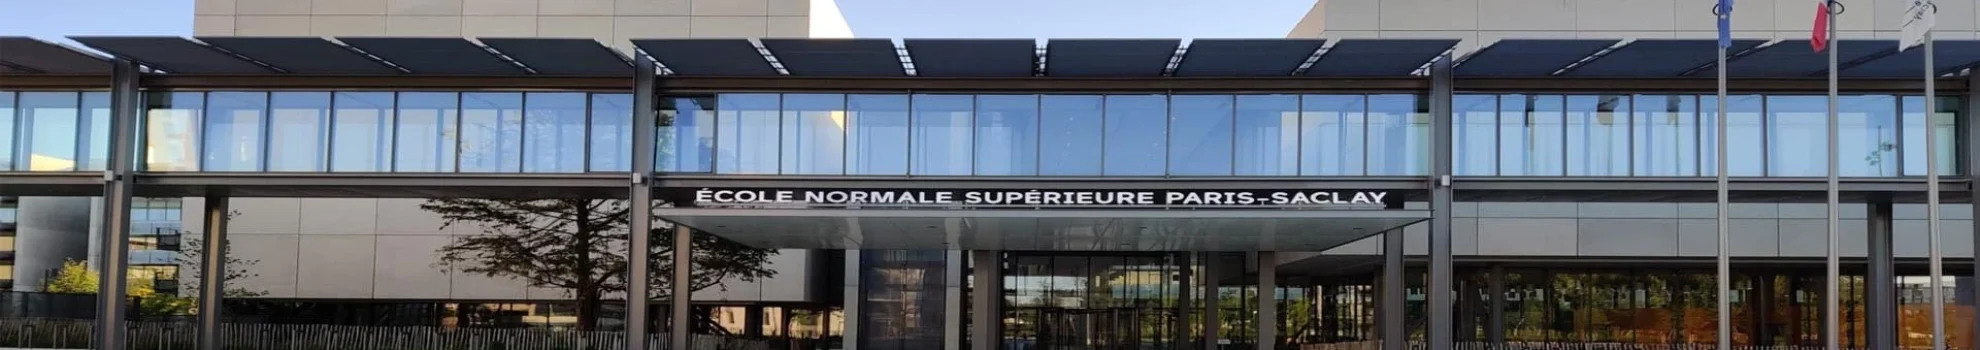 Ecole Normale Supérieure Paris-Saclay